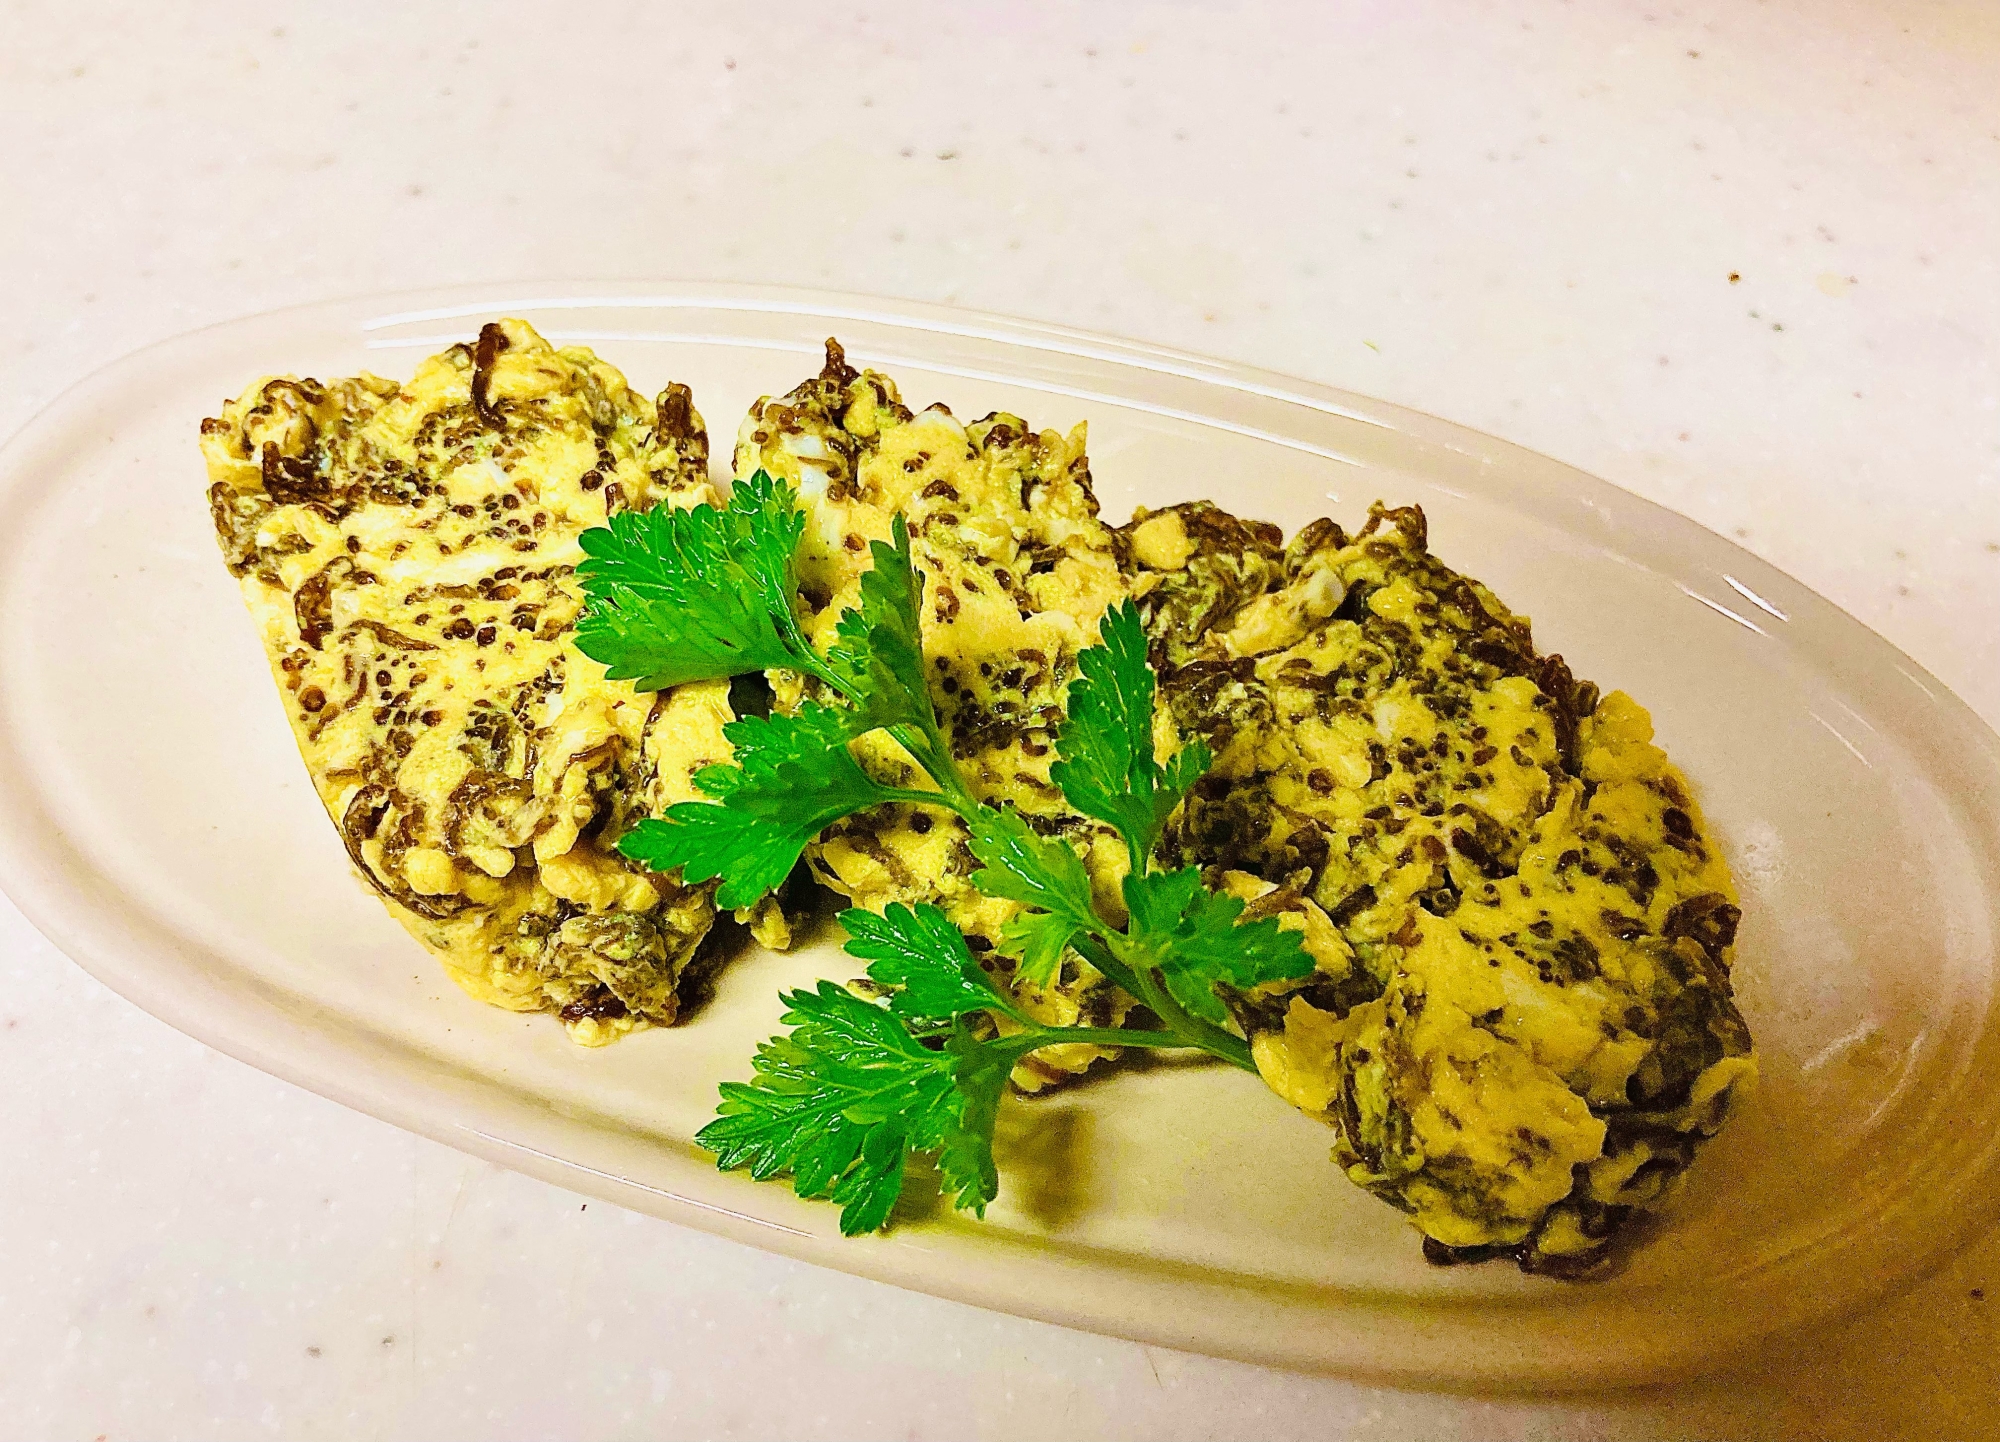 琉球厚焼き卵 調味料は使わなくても美味しい レシピ 作り方 By Hg 1123 楽天レシピ